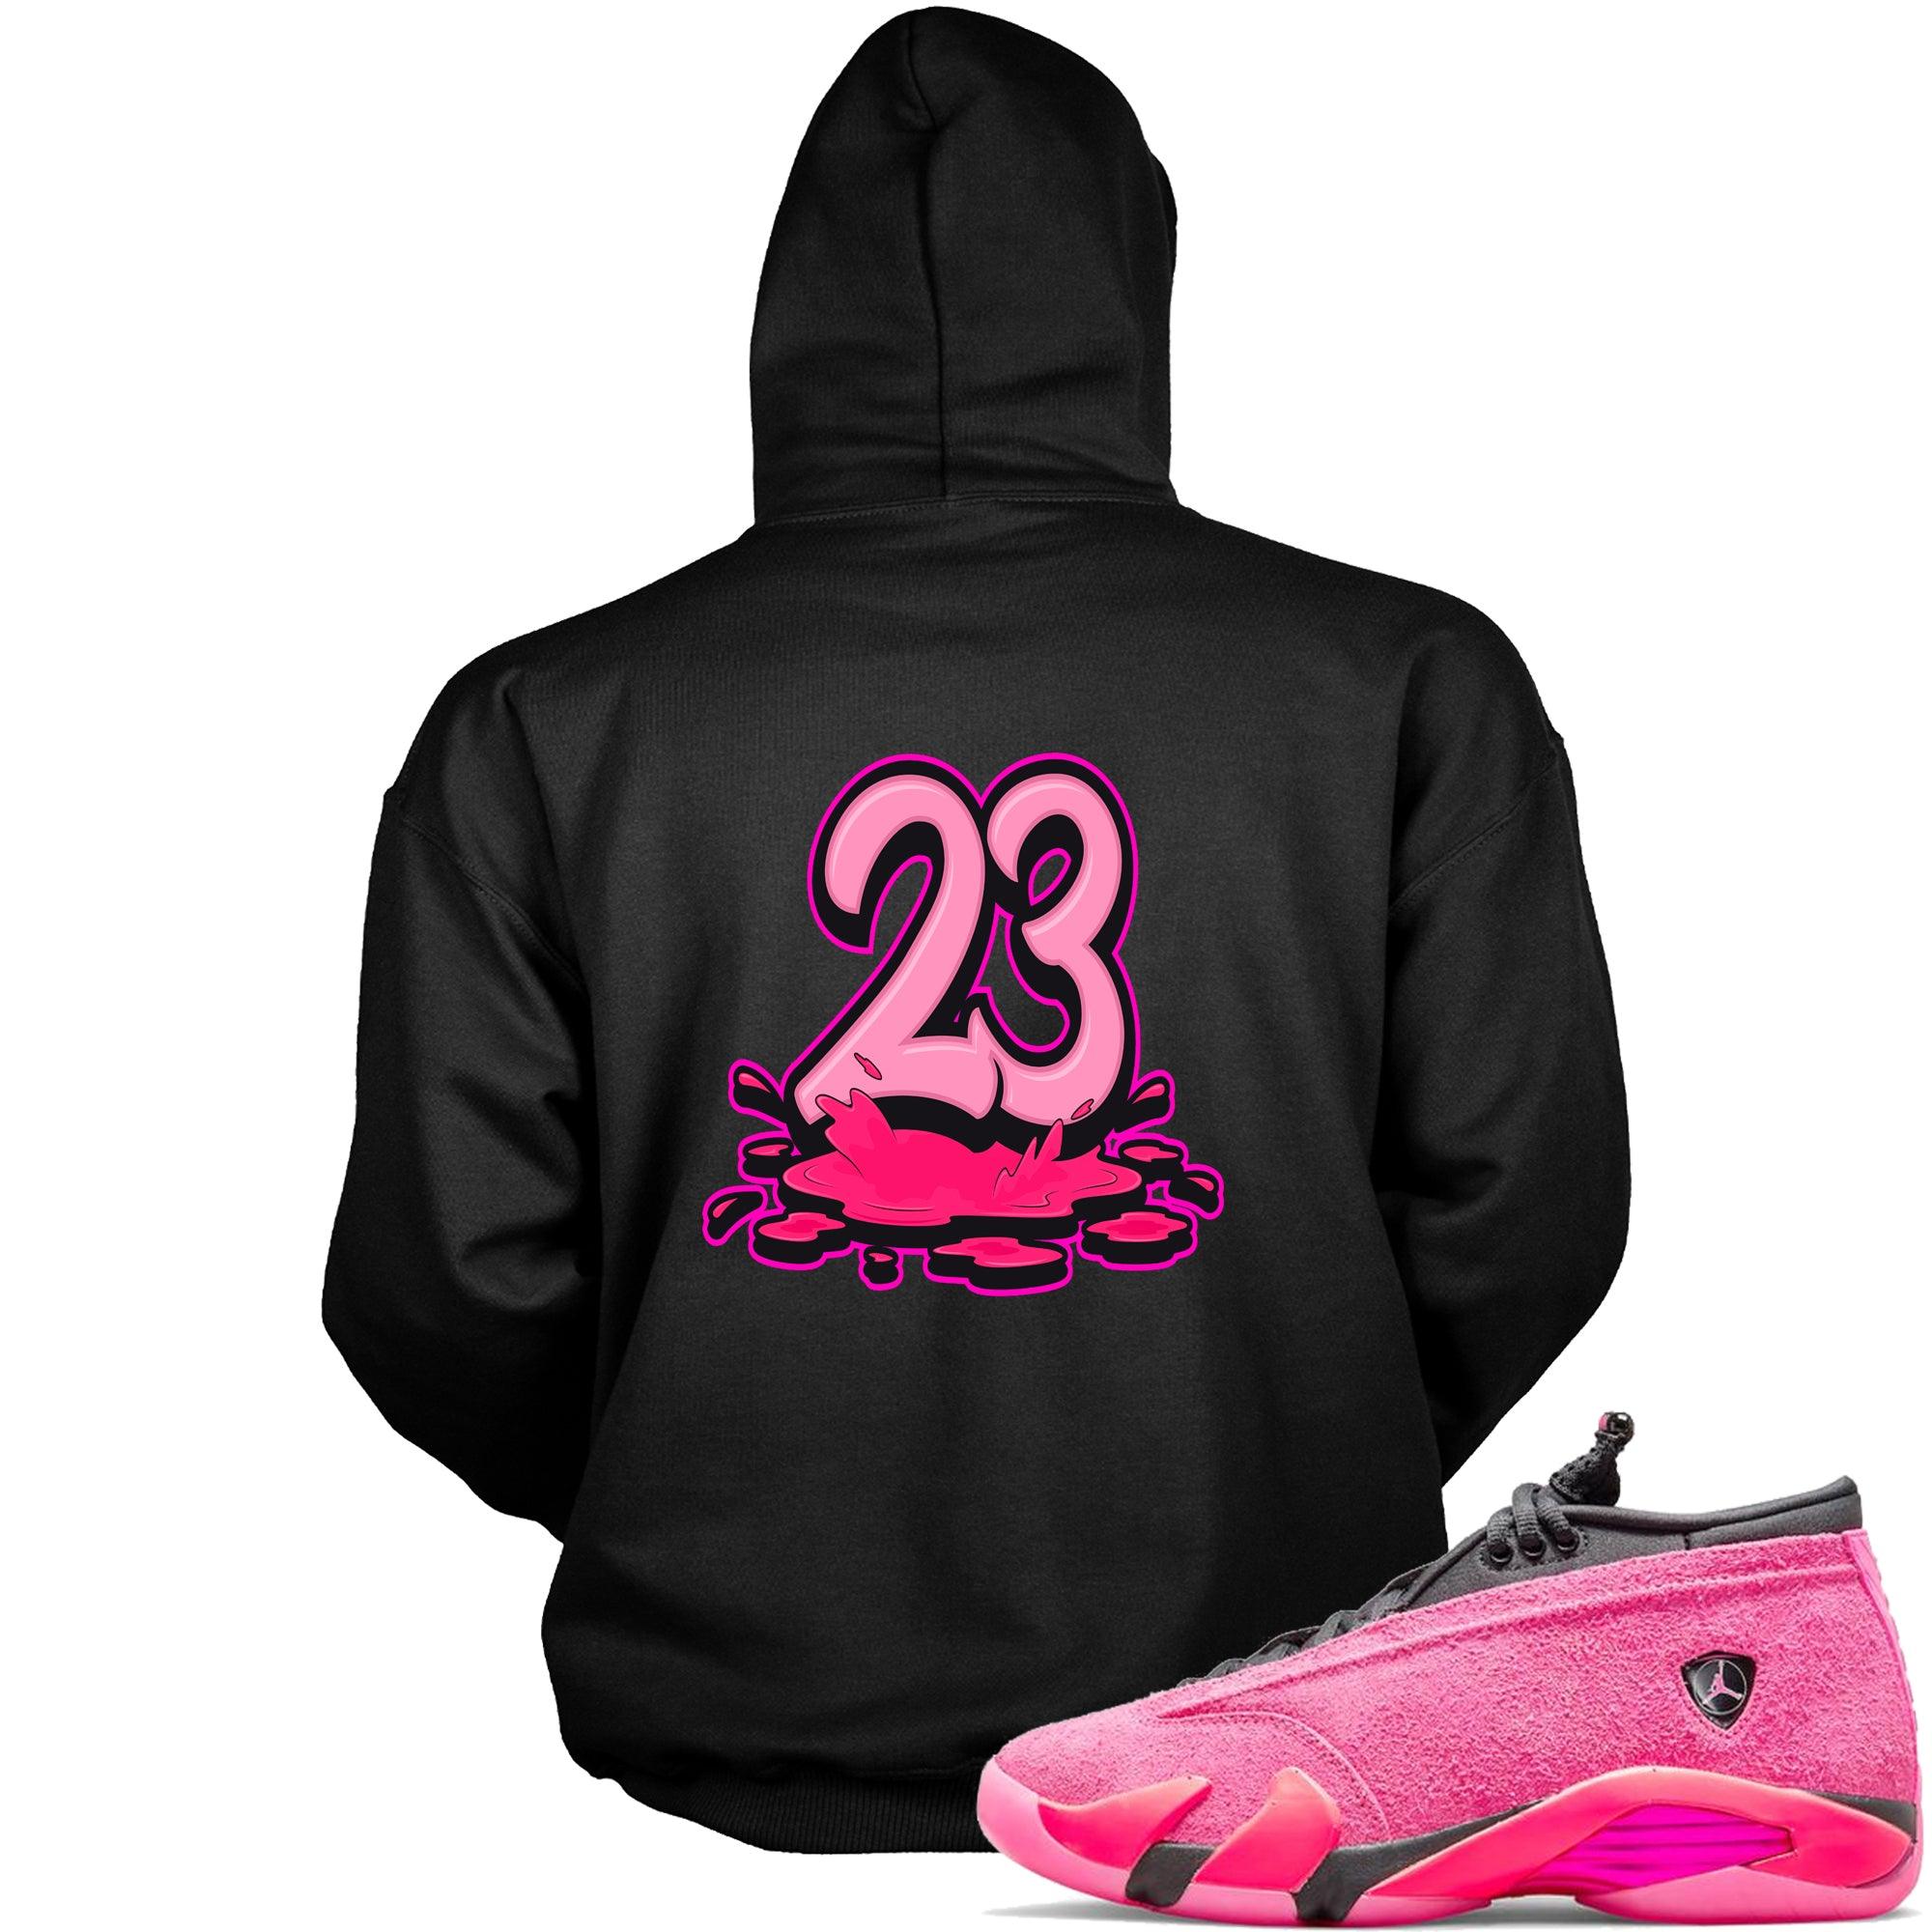 Black 23 Melting Hoodie Jordan 14s Low Shocking Pink photo